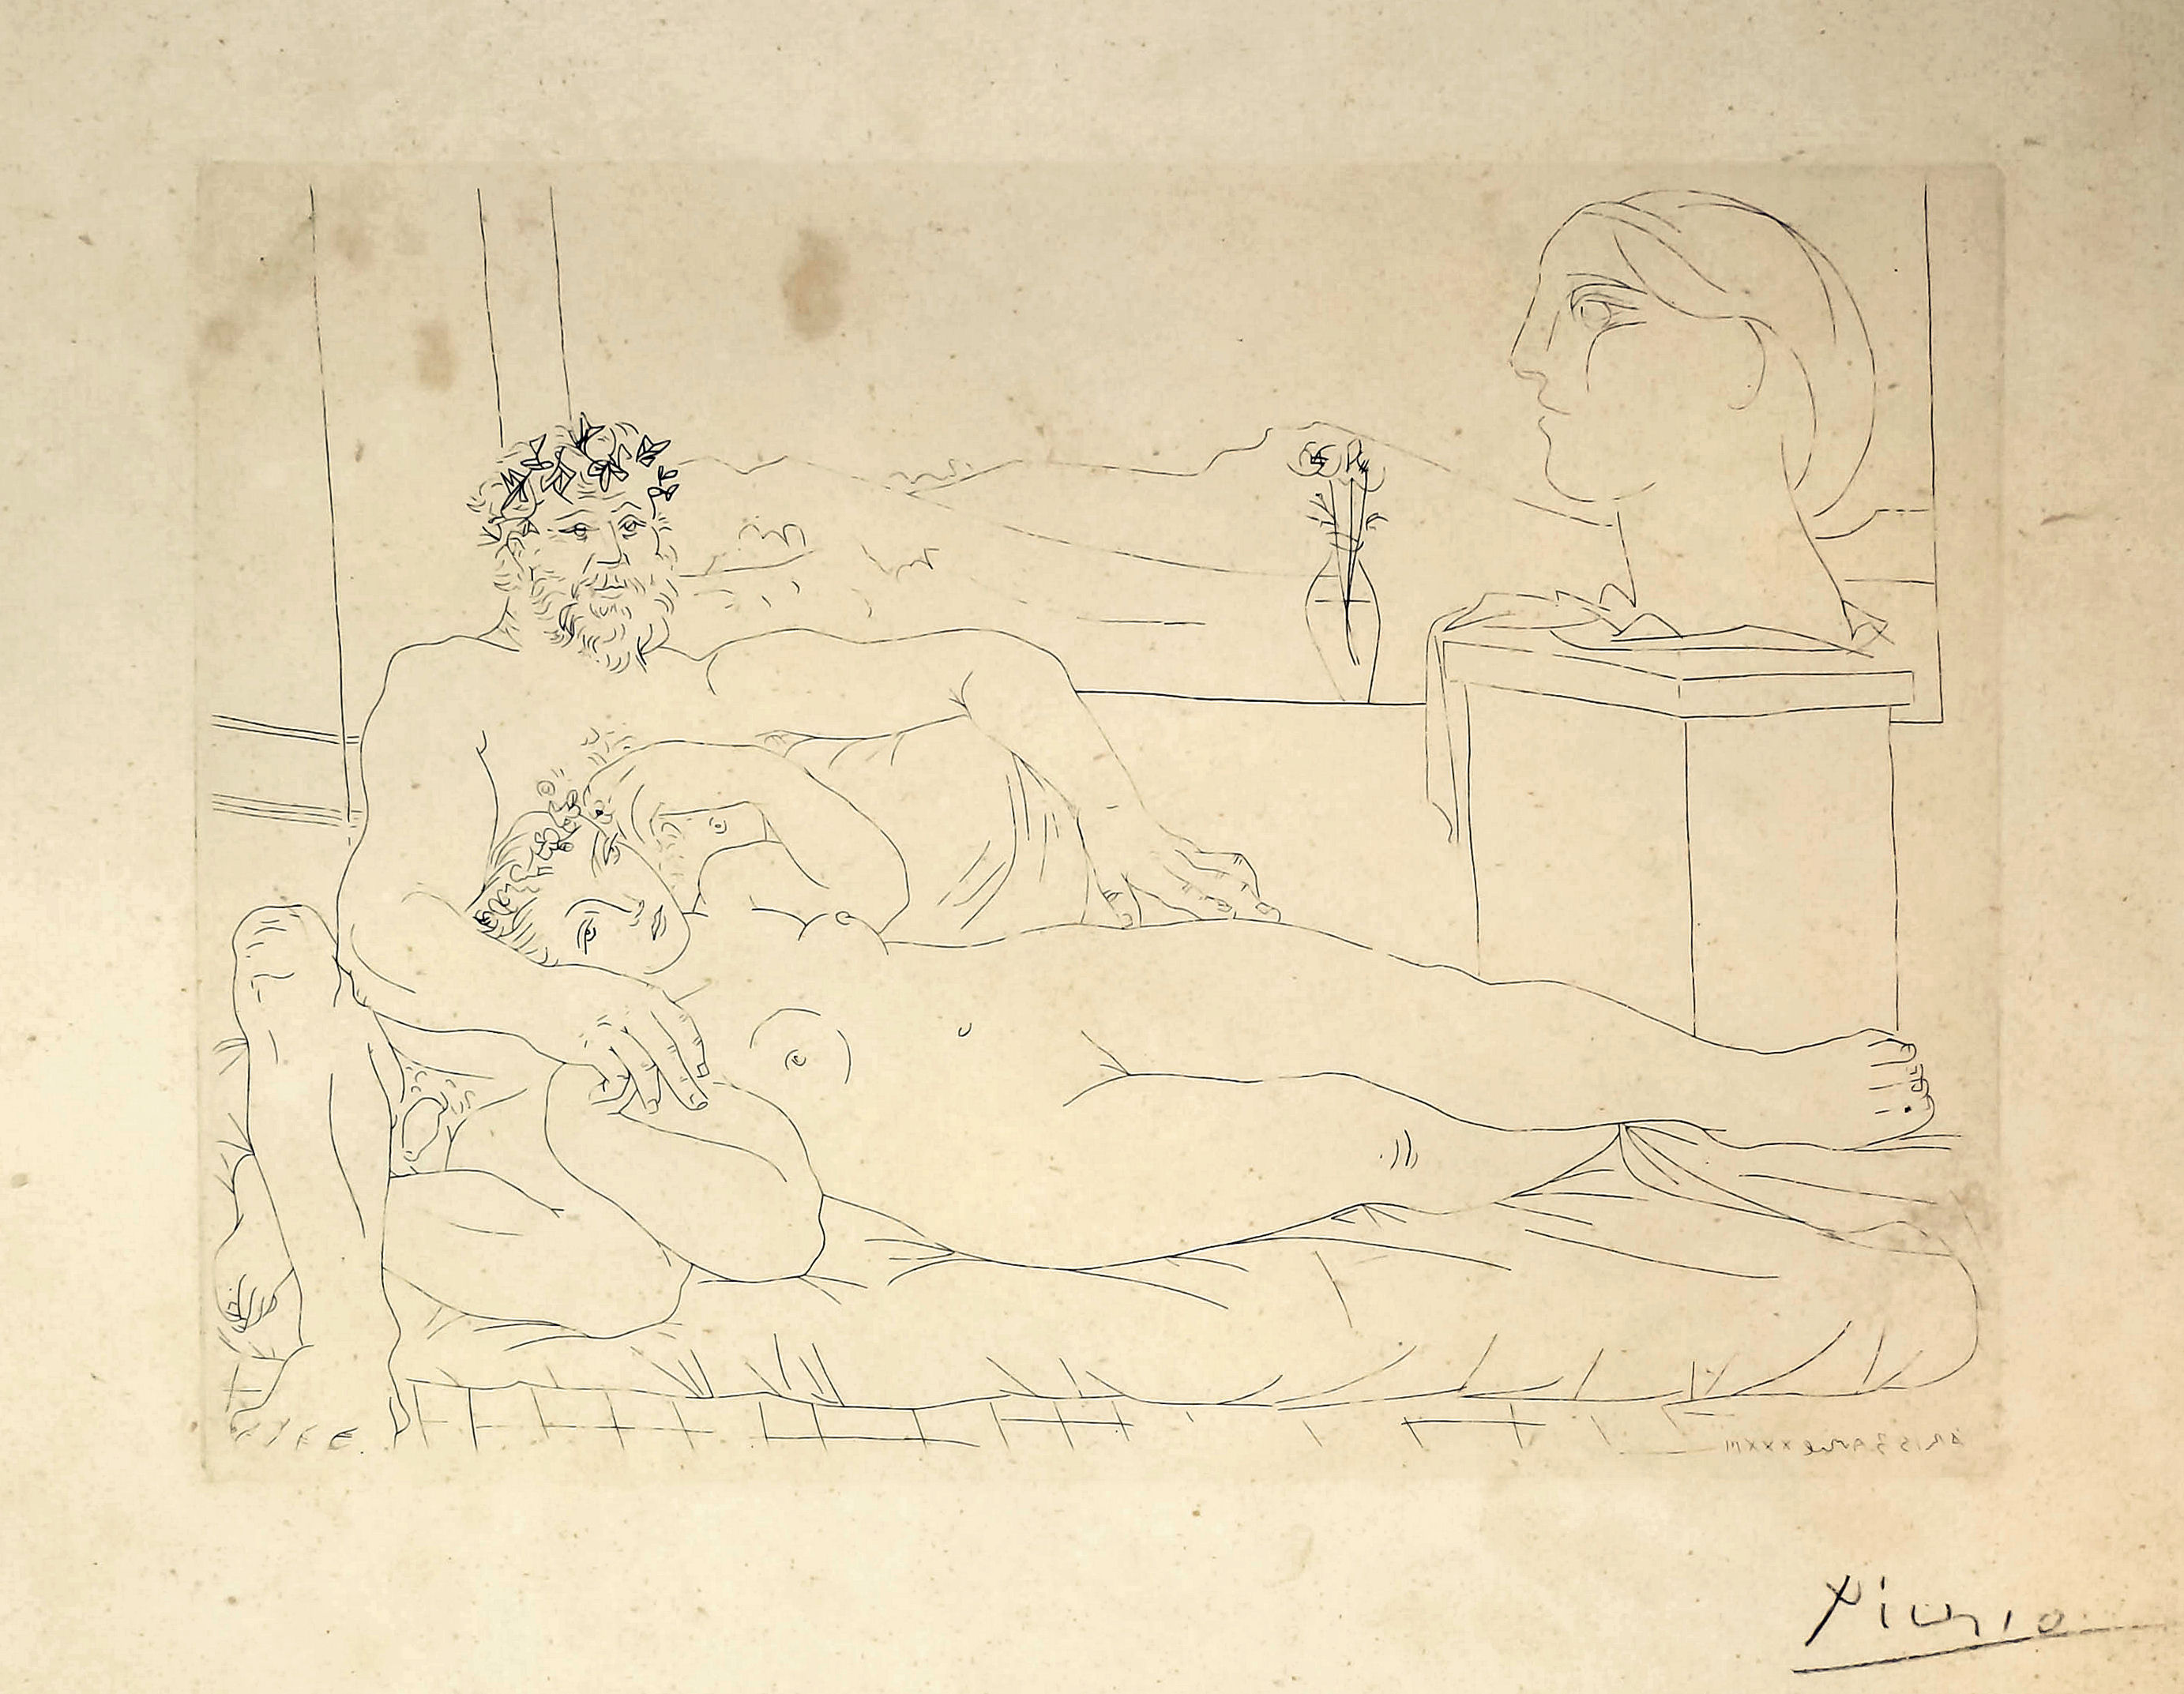 *** Pablo Picasso (1881-1973) - Etching - "Le Repos du Sculpteur II", from "La Suite Vollard", 1933,